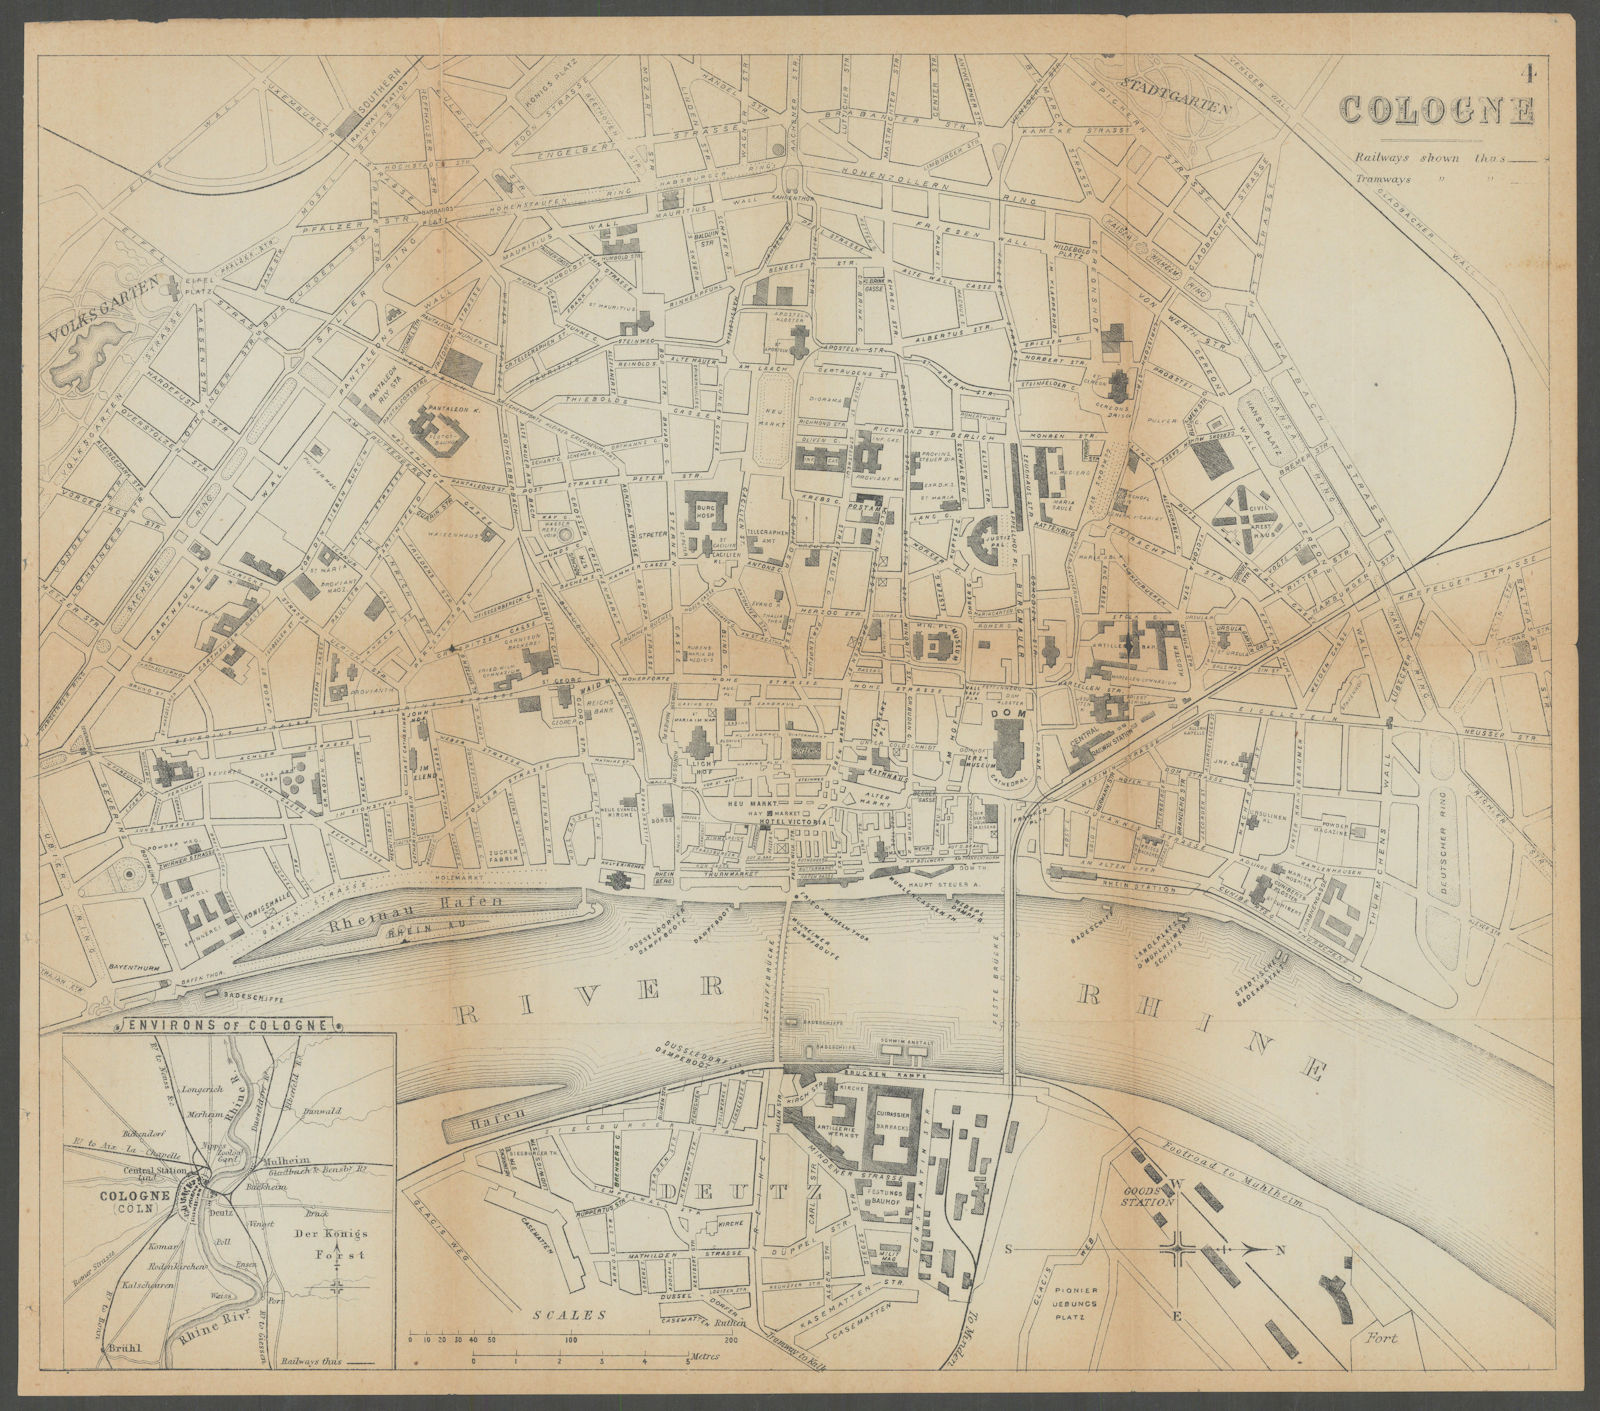 COLOGNE KOLN KÖLN antique town plan city map. Germany. BRADSHAW c1899 old